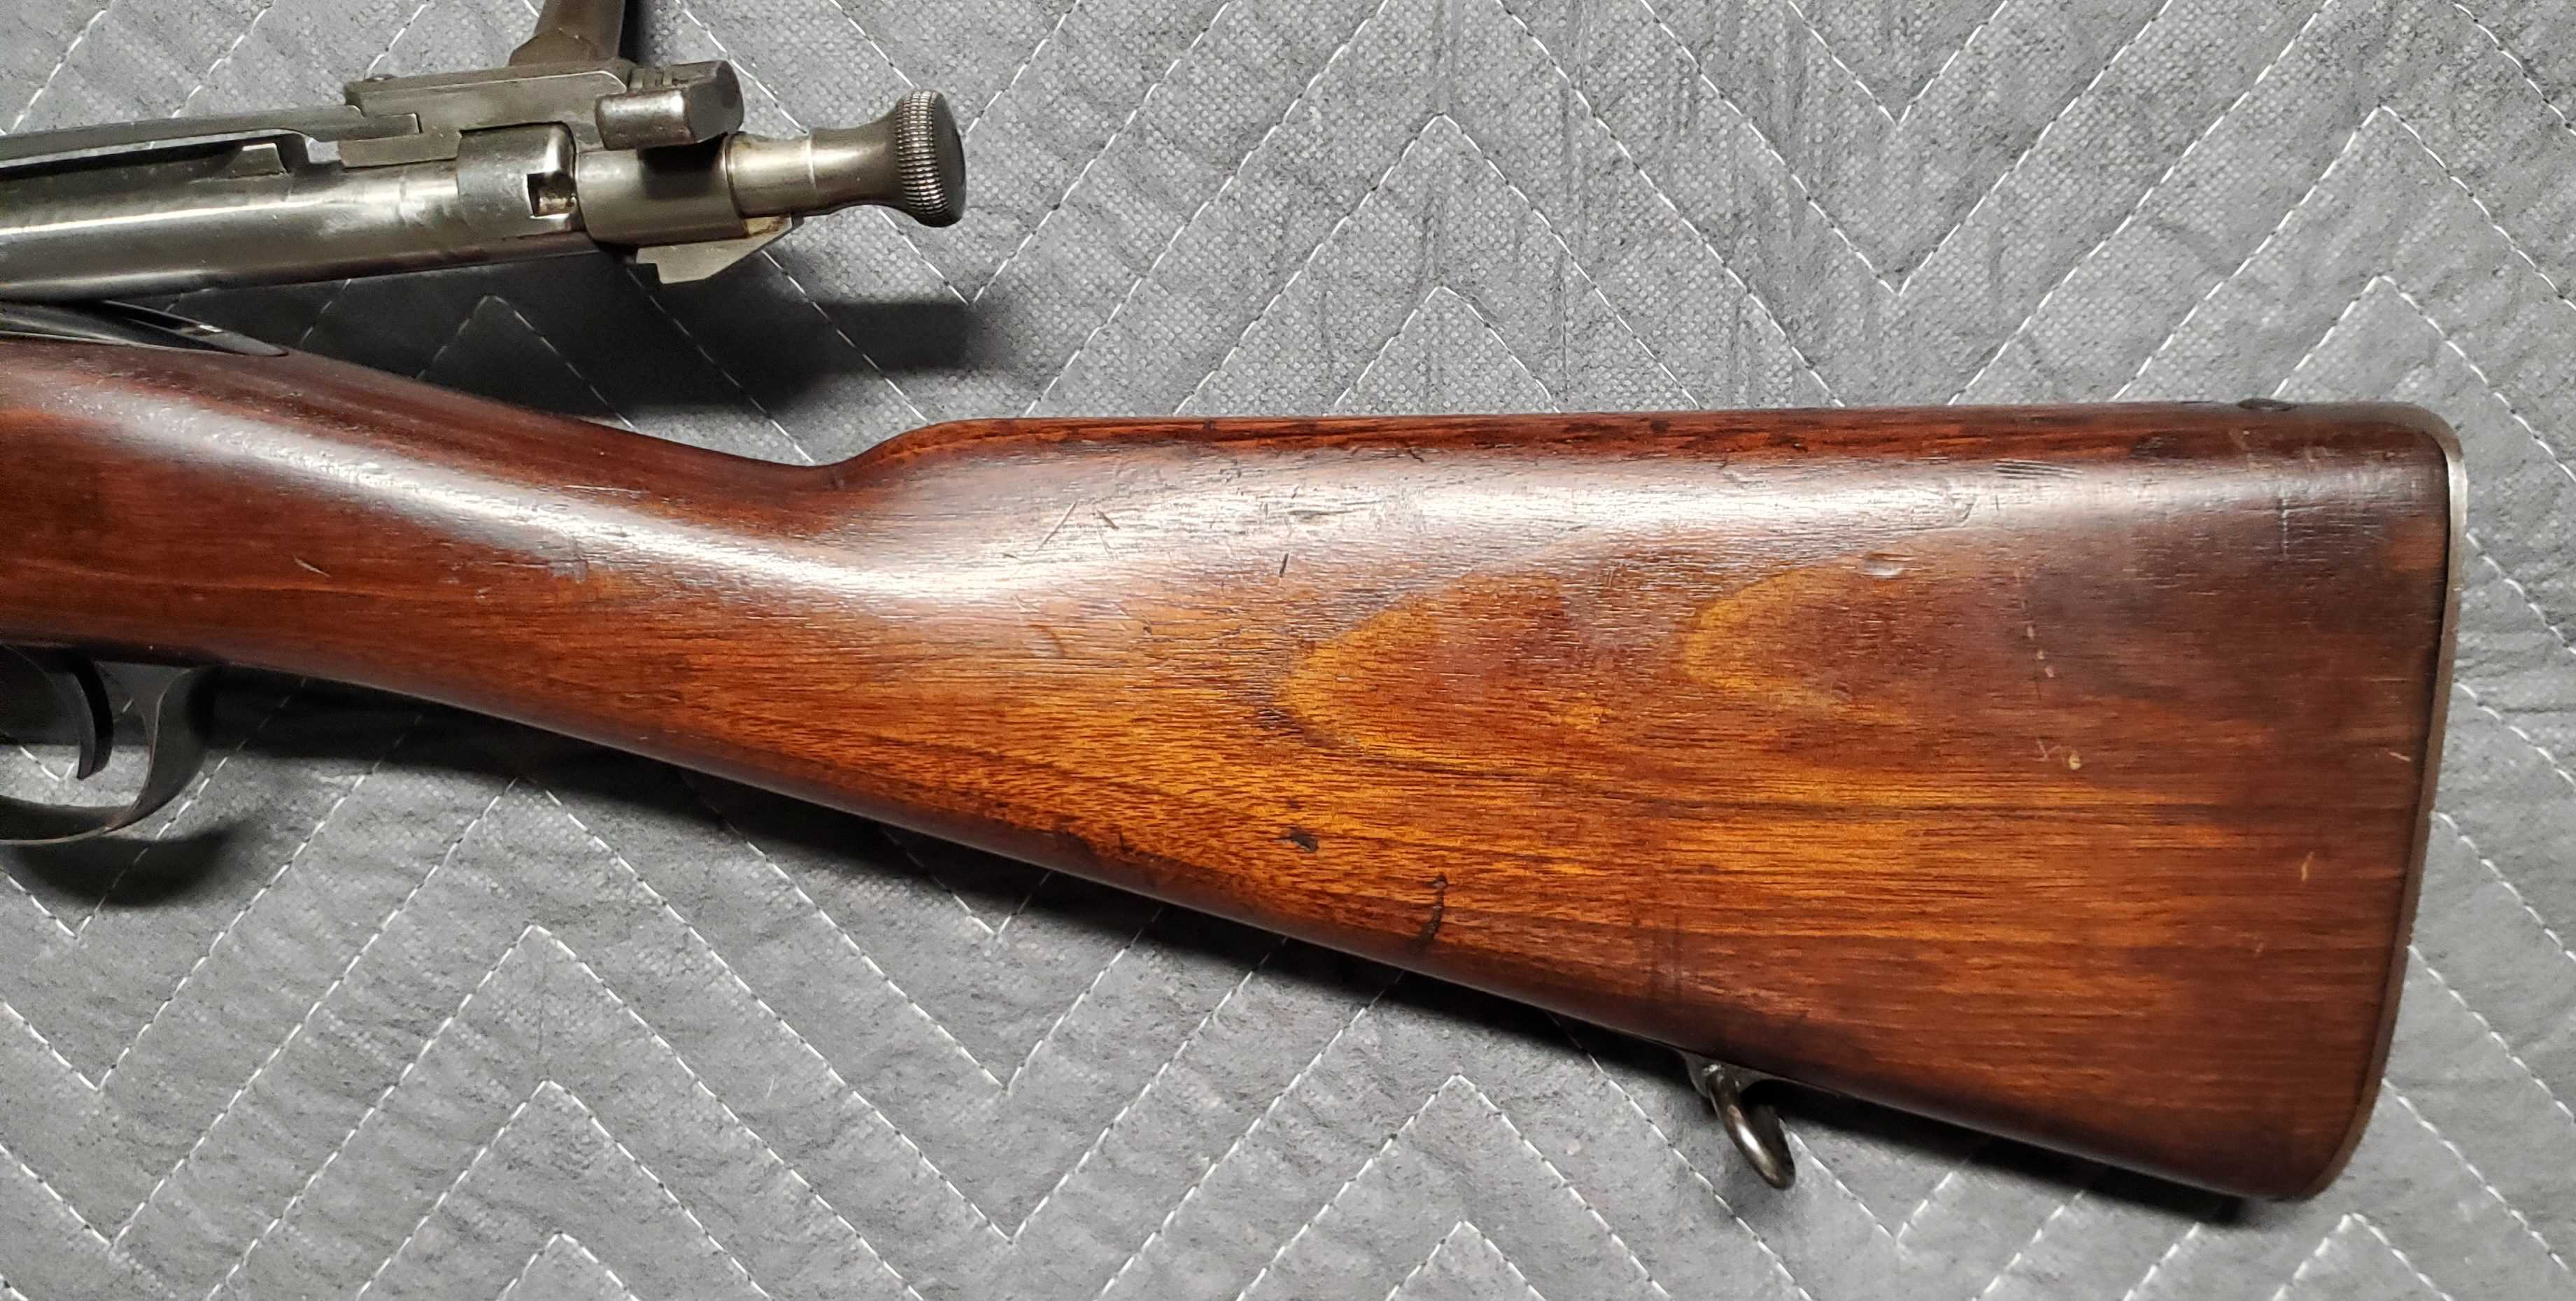 Krag Rifle11.jpg